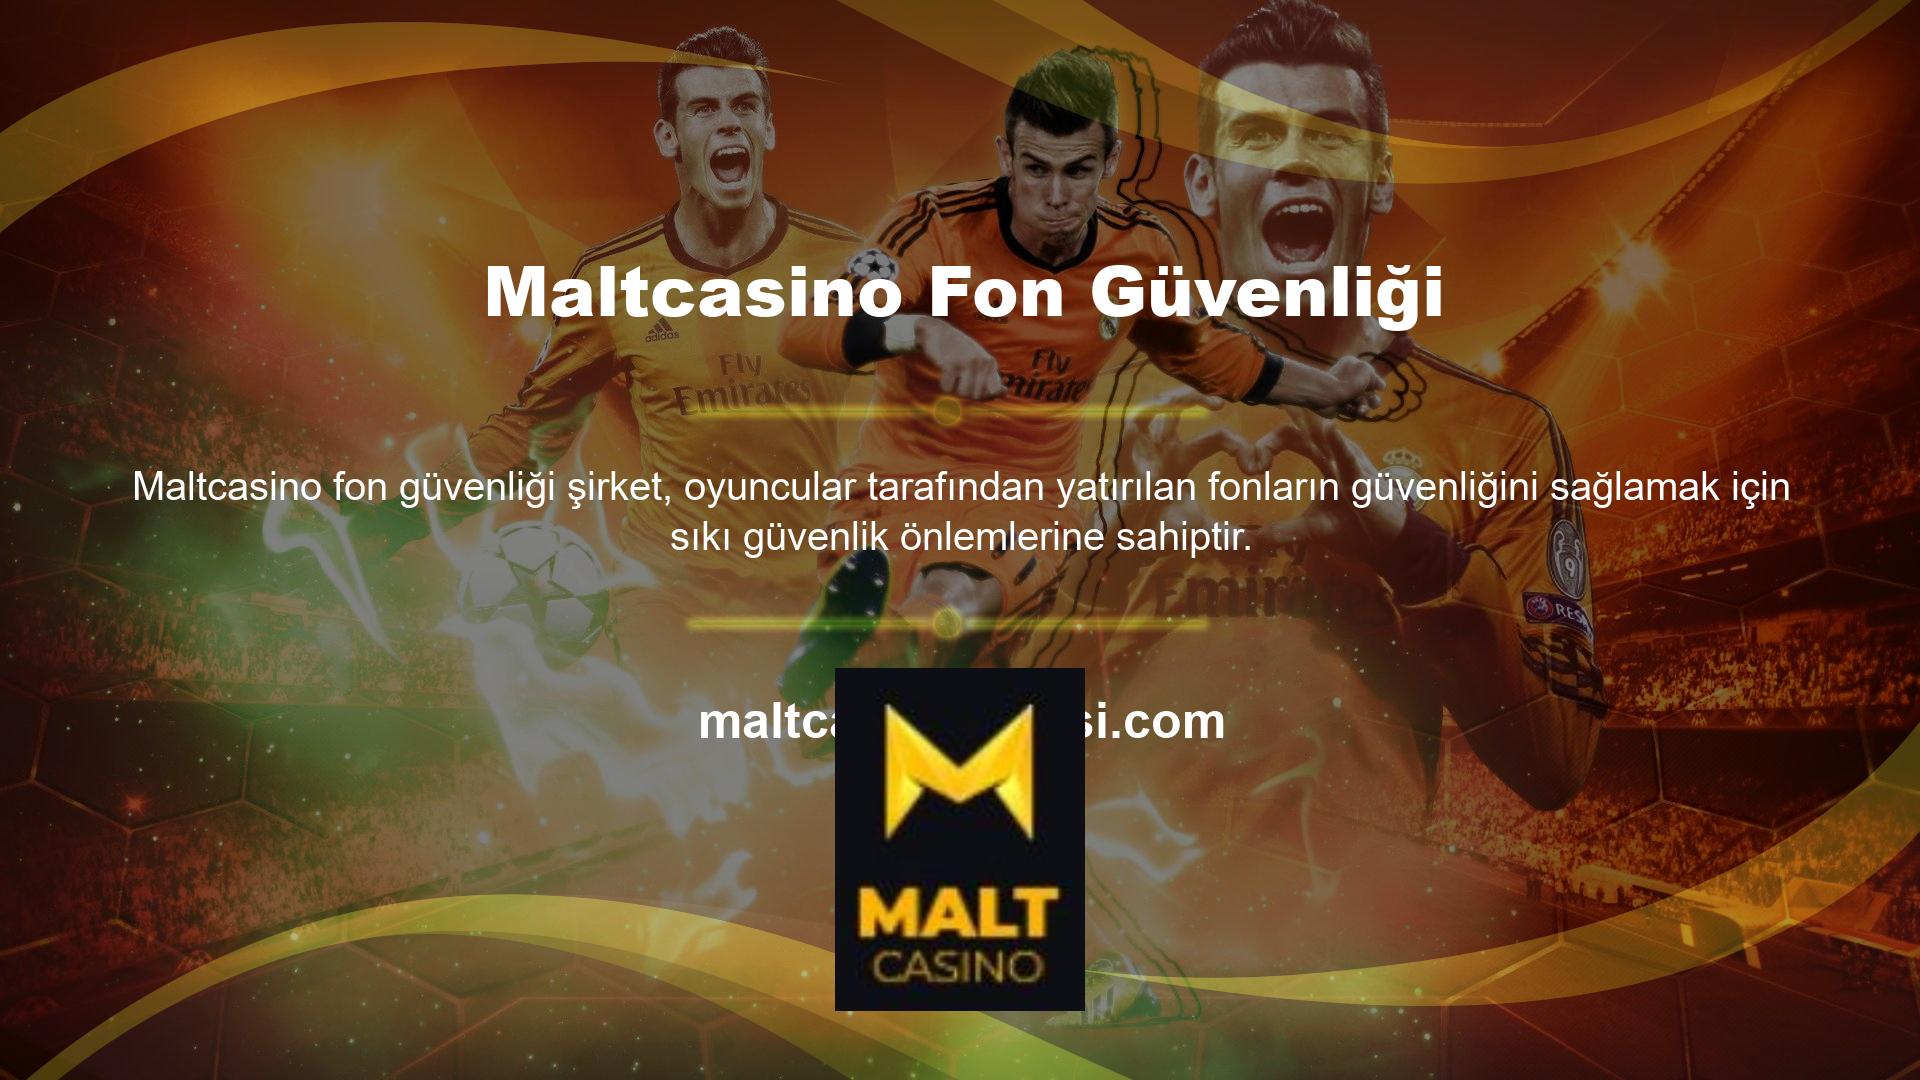 Maltcasino fon güvenliği, hesaplarının kişisel finansal güvenliğini garanti eder